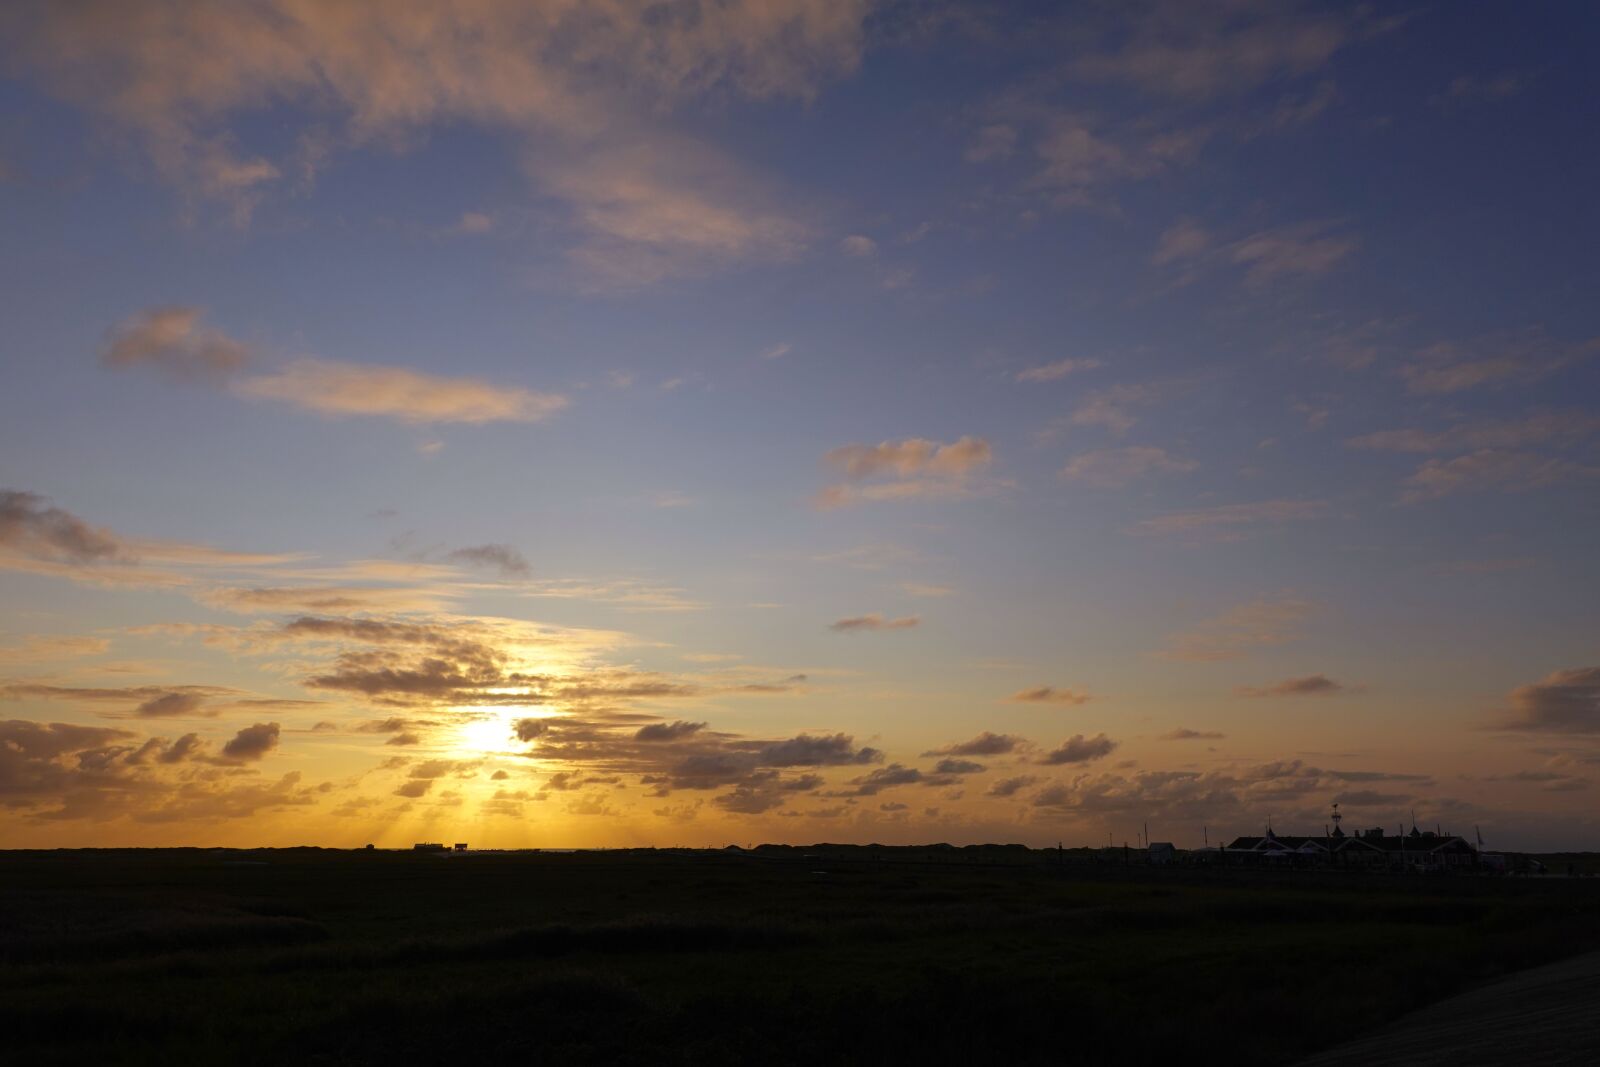 Sony DSC-RX100M7 sample photo. Landscape, sky, sunset photography